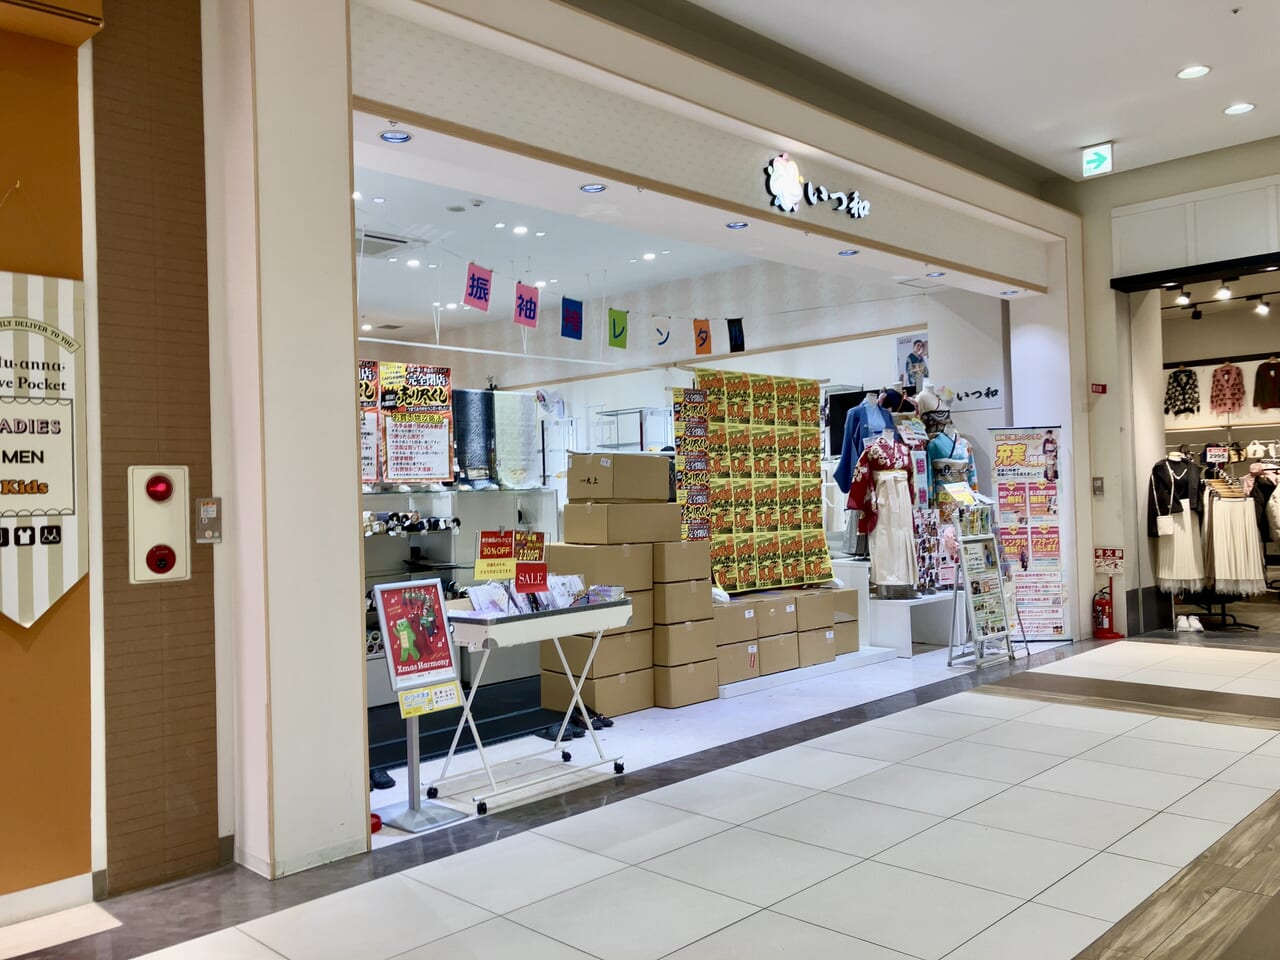 「アリオ札幌」専門店街の閉店ラッシュがとまりません。すてきな着物の販売店「いつ和」も移転閉店するようです。